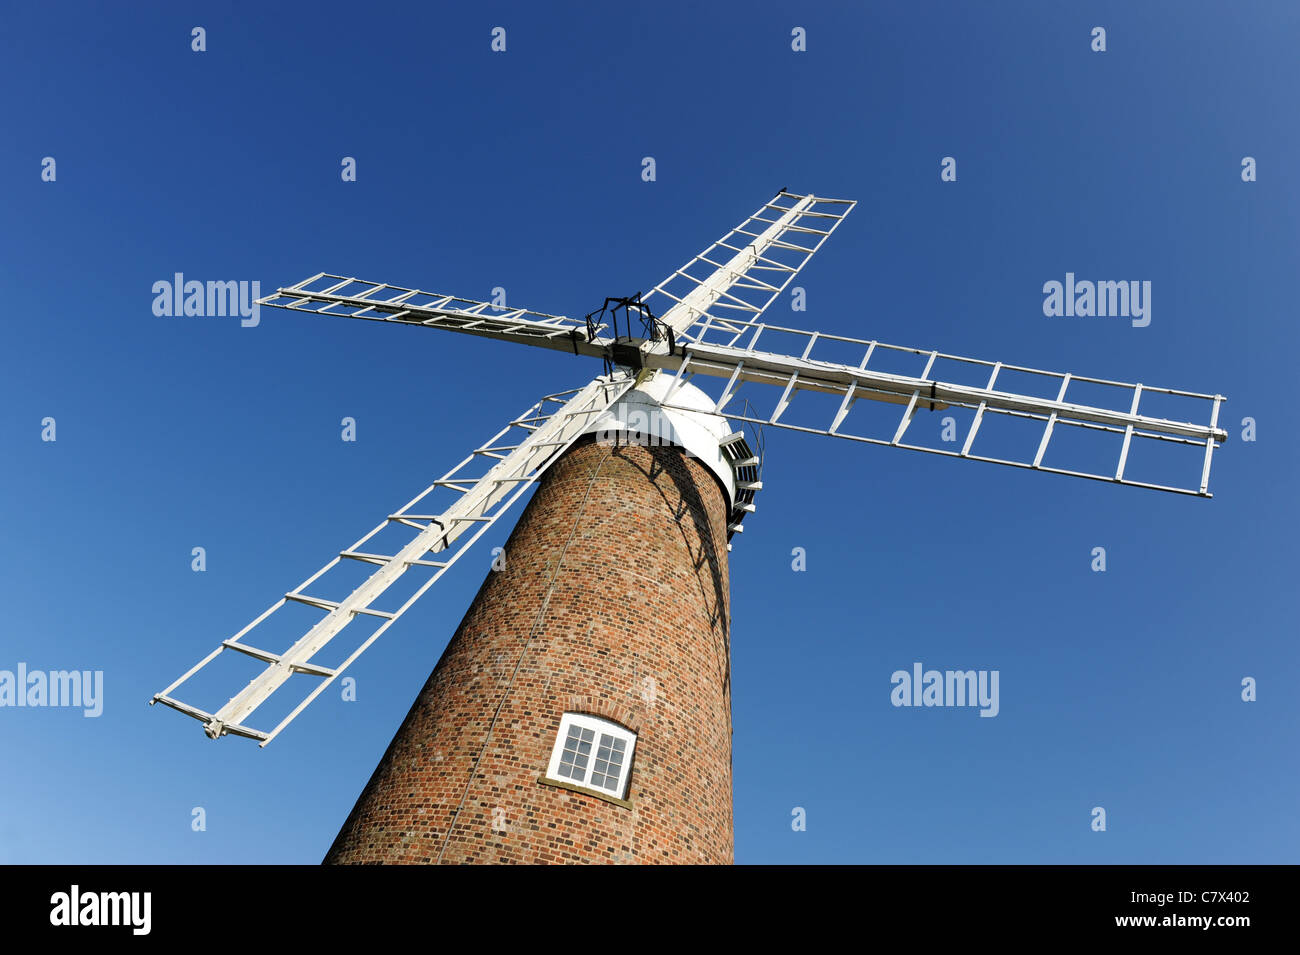 Chiseldon moulin à Windmill Hill Business Park Swindon Wiltshire England UK Banque D'Images